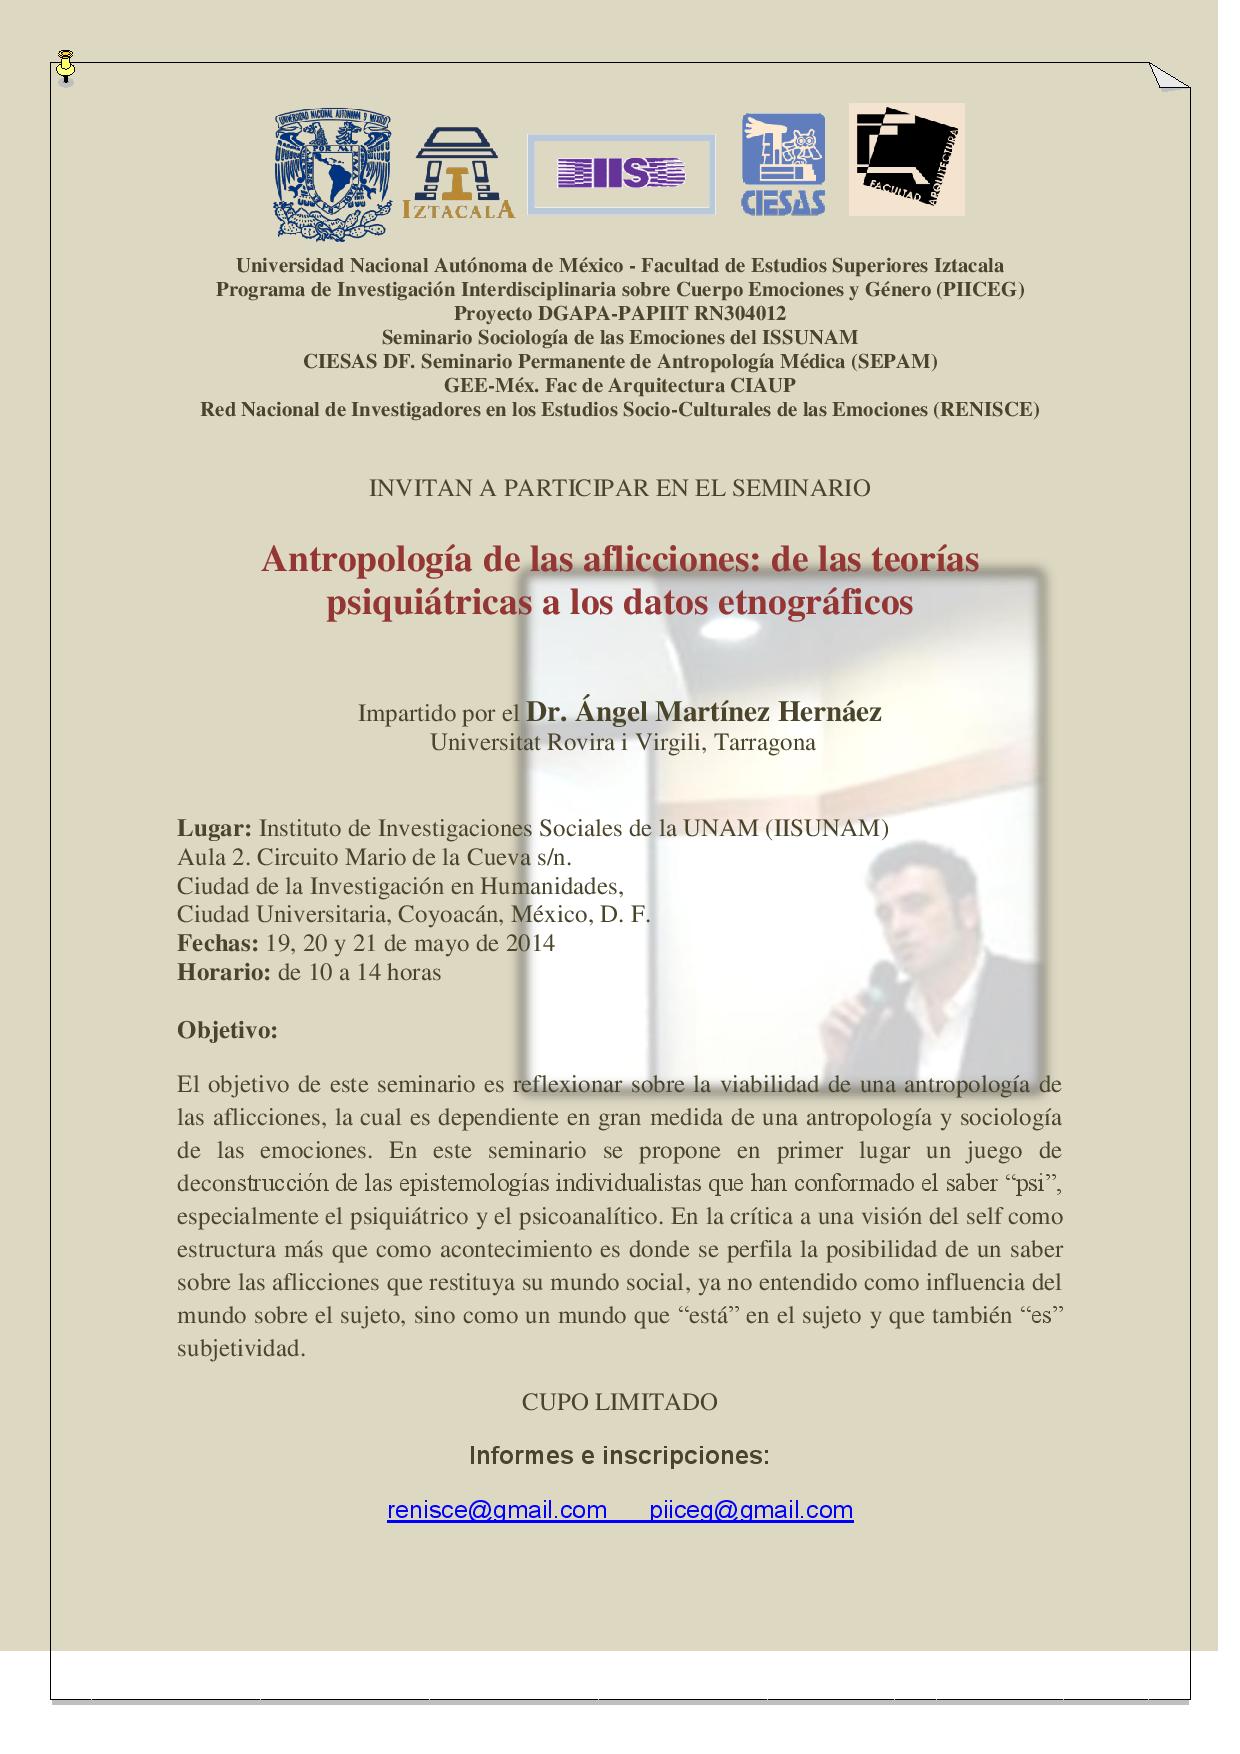 Invitacion SeminarioAMH2014UNAM-page-001